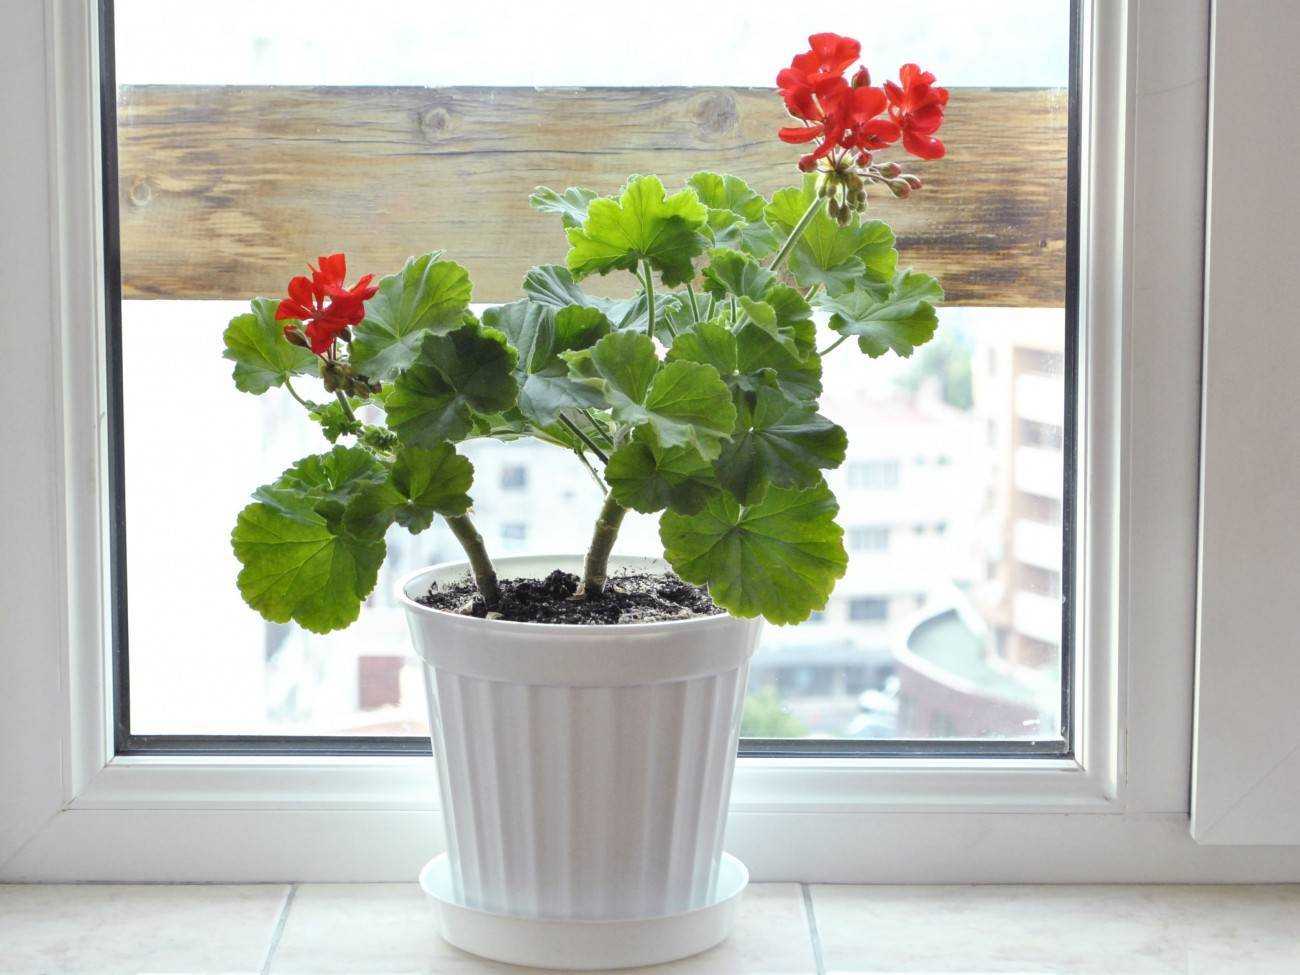 Почему не цветет герань в домашних условиях? как заставить пеларгонию зацвести дома? как ухаживать за комнатной геранью, чтобы она цвела обильно?